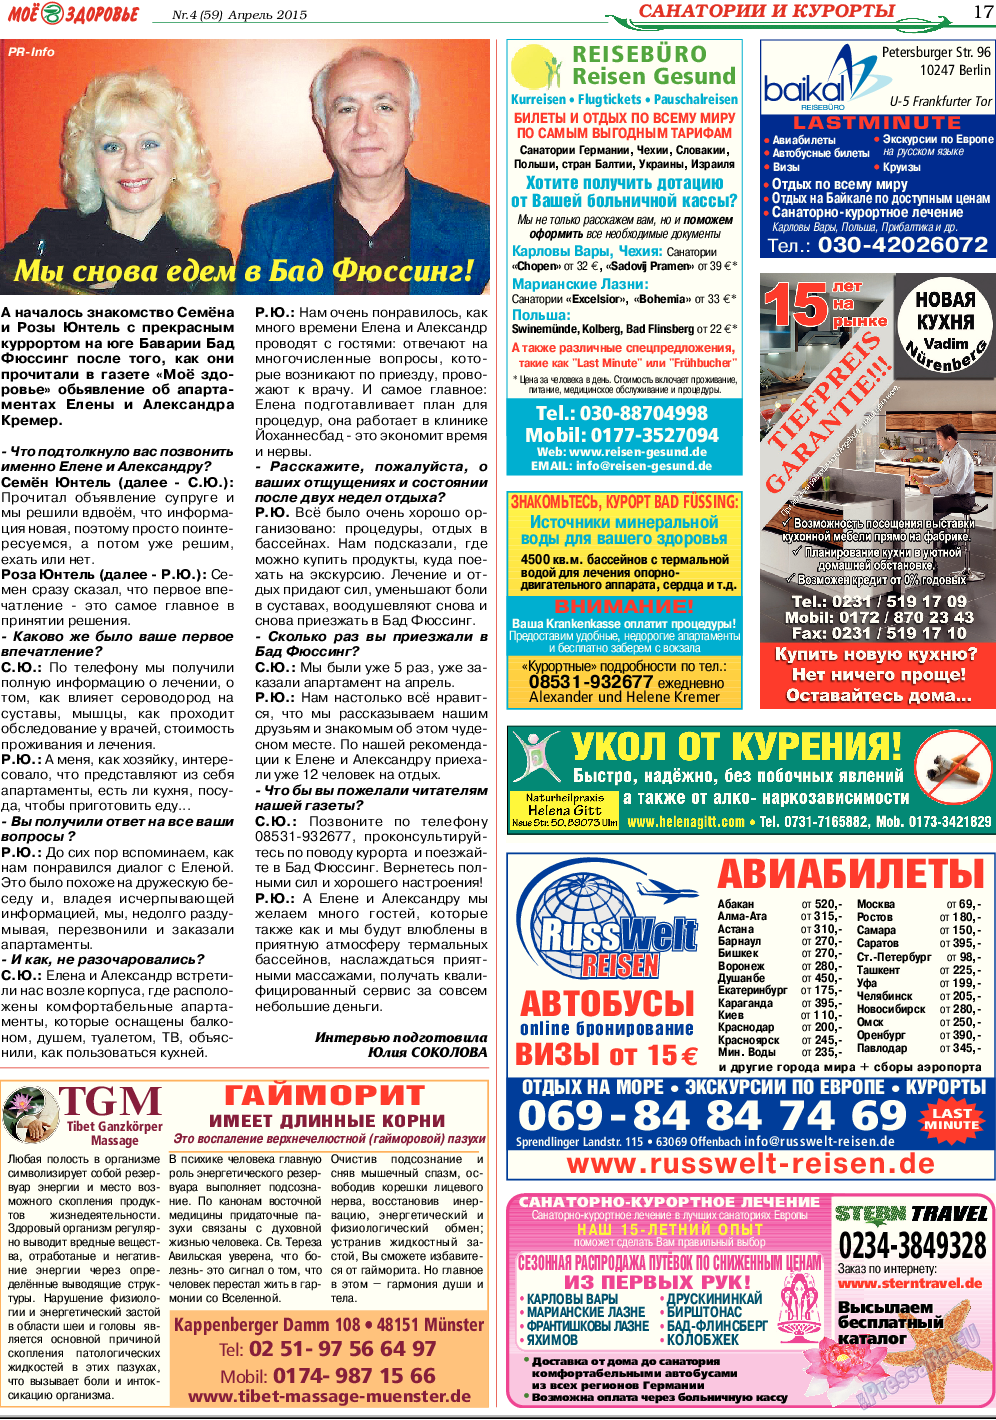 Кругозор, газета. 2015 №4 стр.17